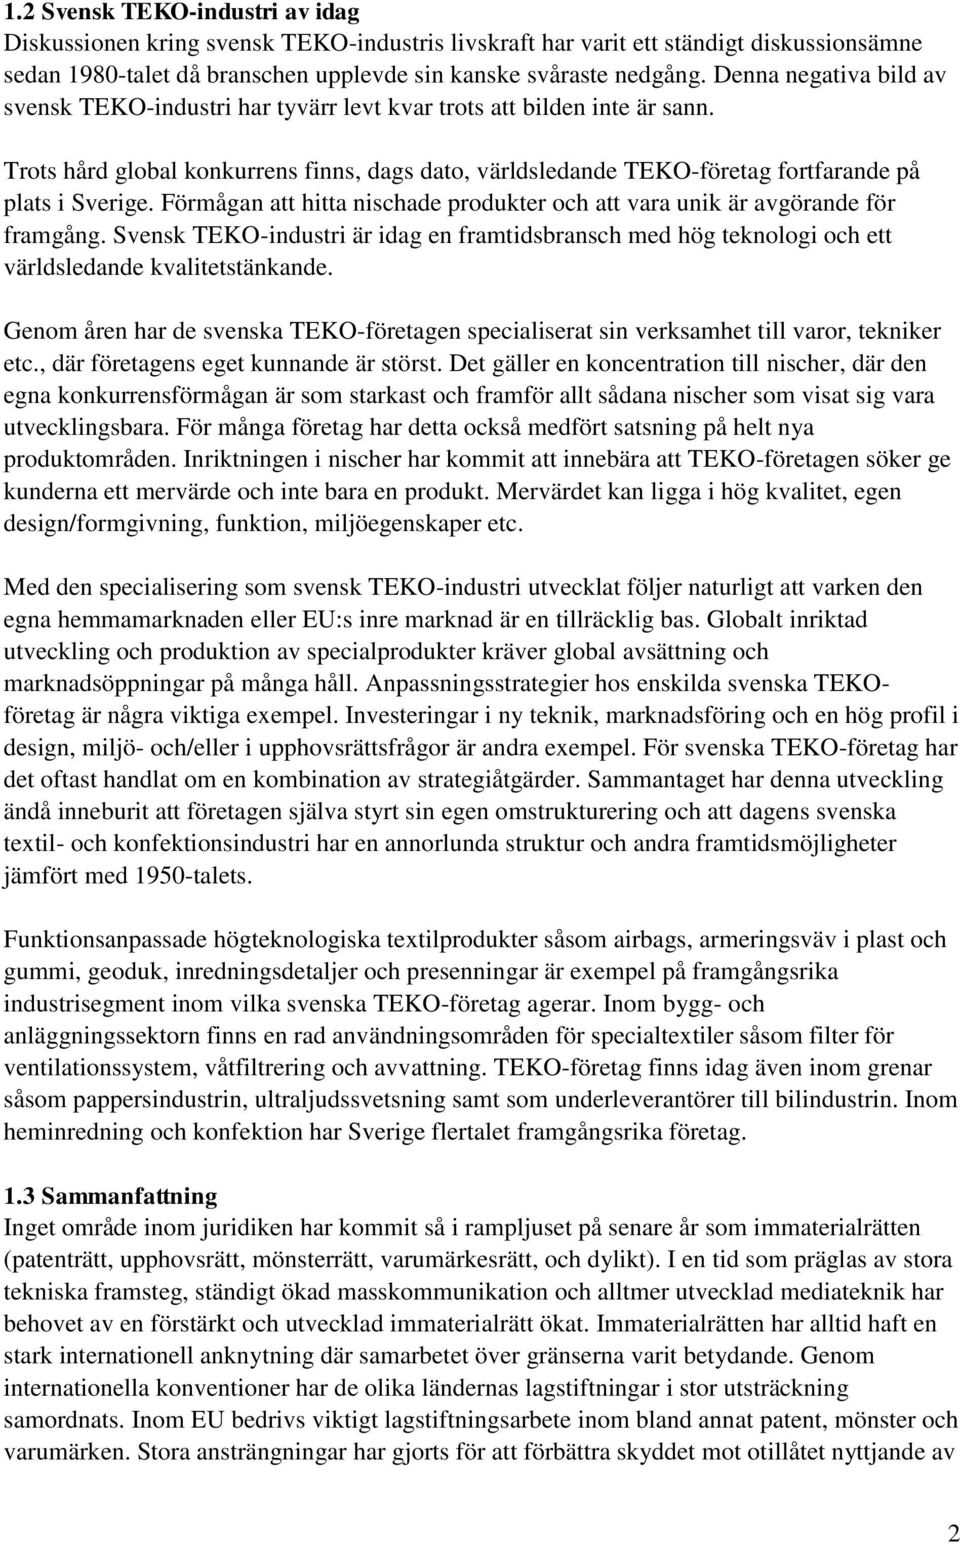 Trots hård global konkurrens finns, dags dato, världsledande TEKO-företag fortfarande på plats i Sverige. Förmågan att hitta nischade produkter och att vara unik är avgörande för framgång.